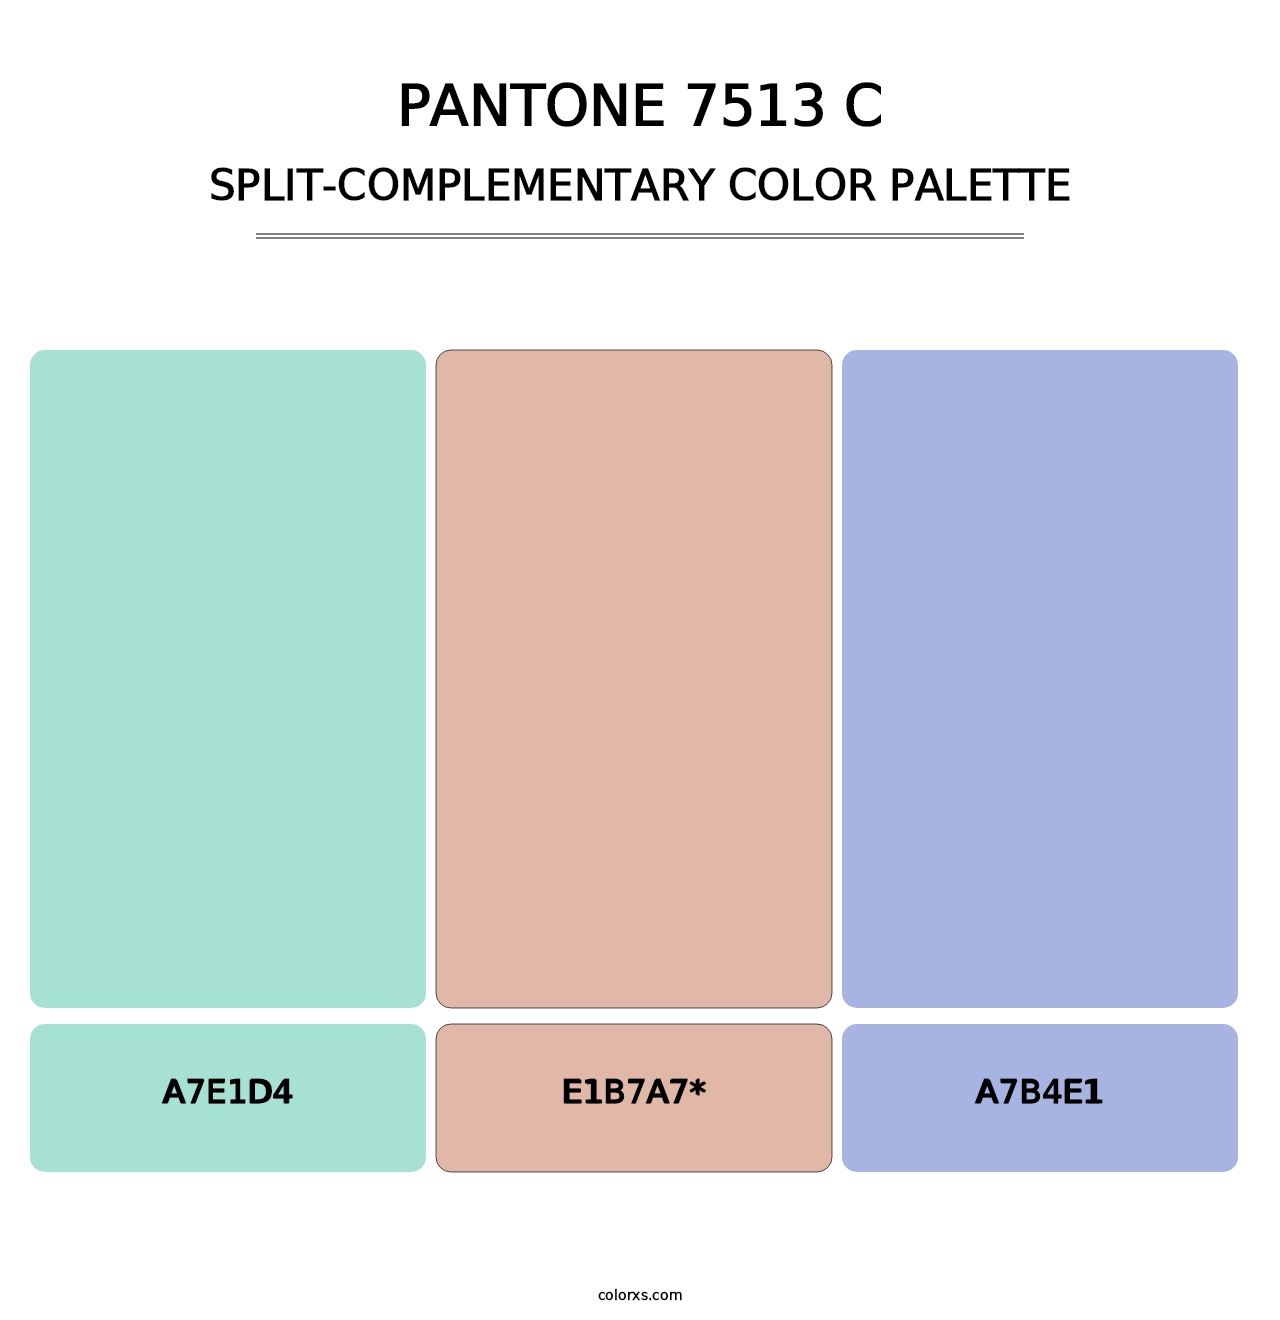 PANTONE 7513 C - Split-Complementary Color Palette